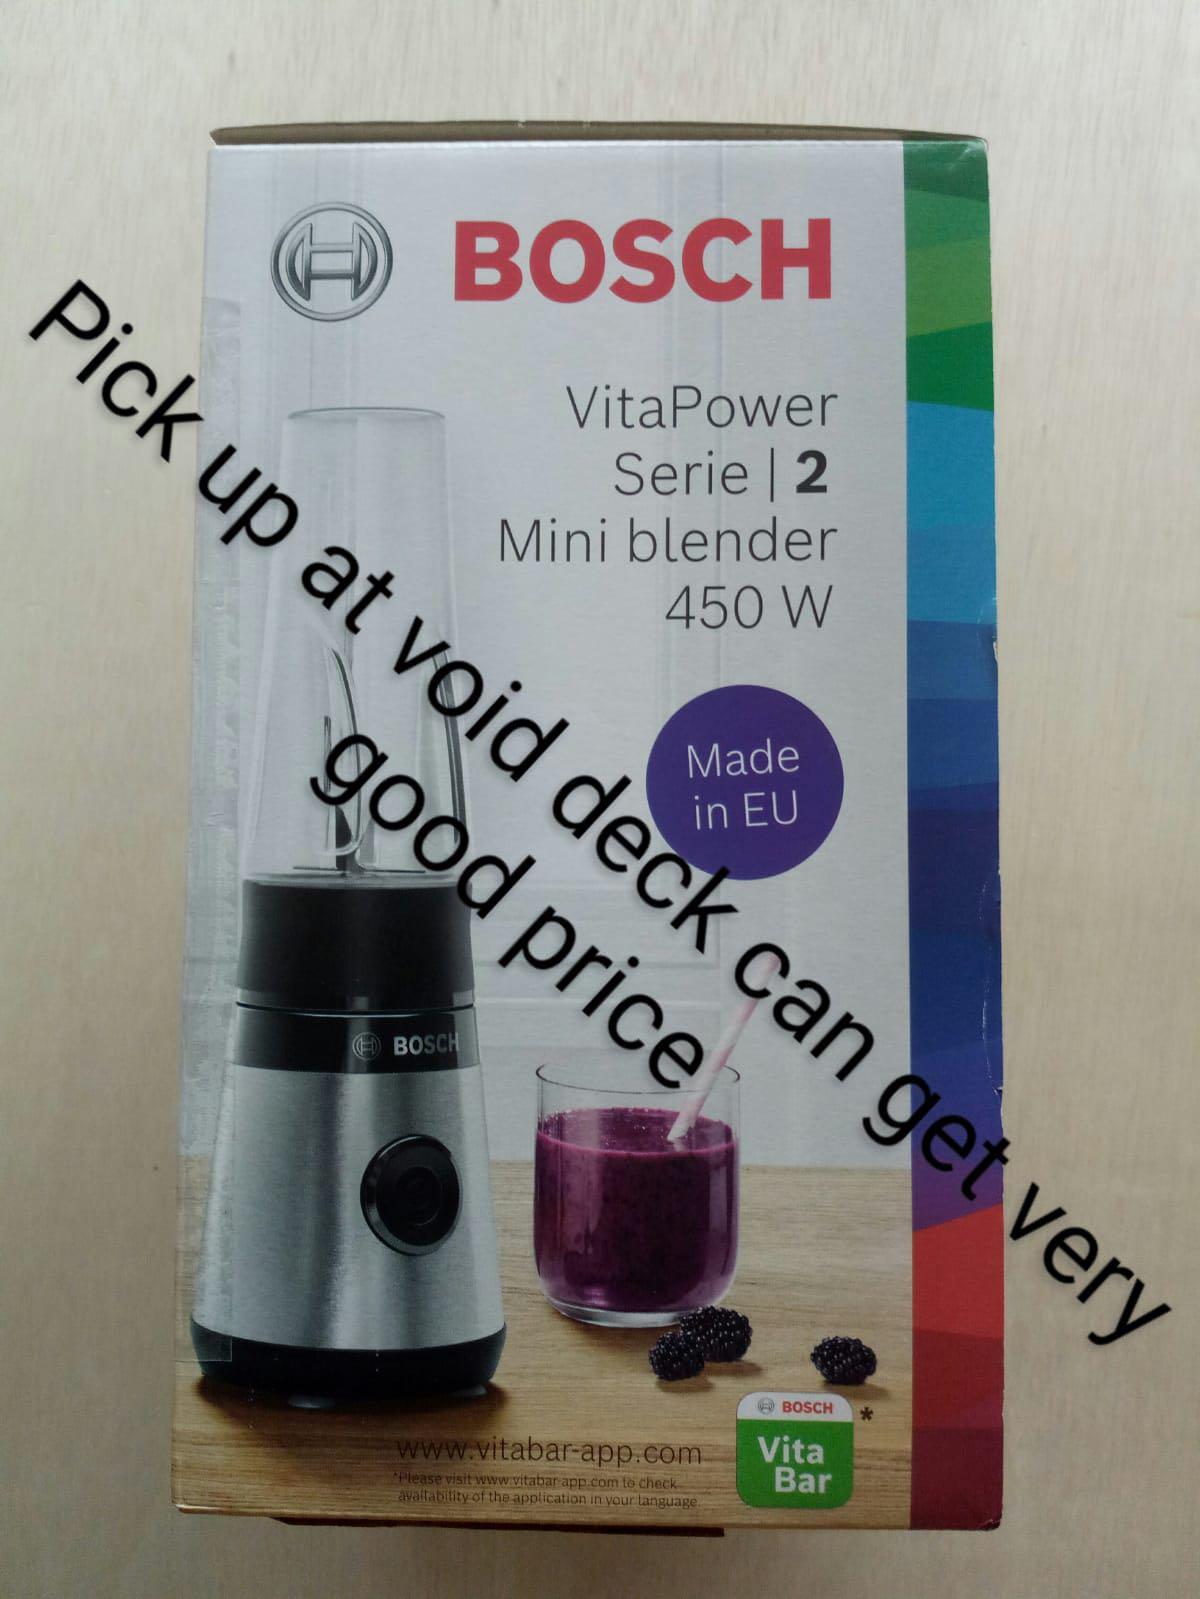 VitaPower Series 2 Mini Blender